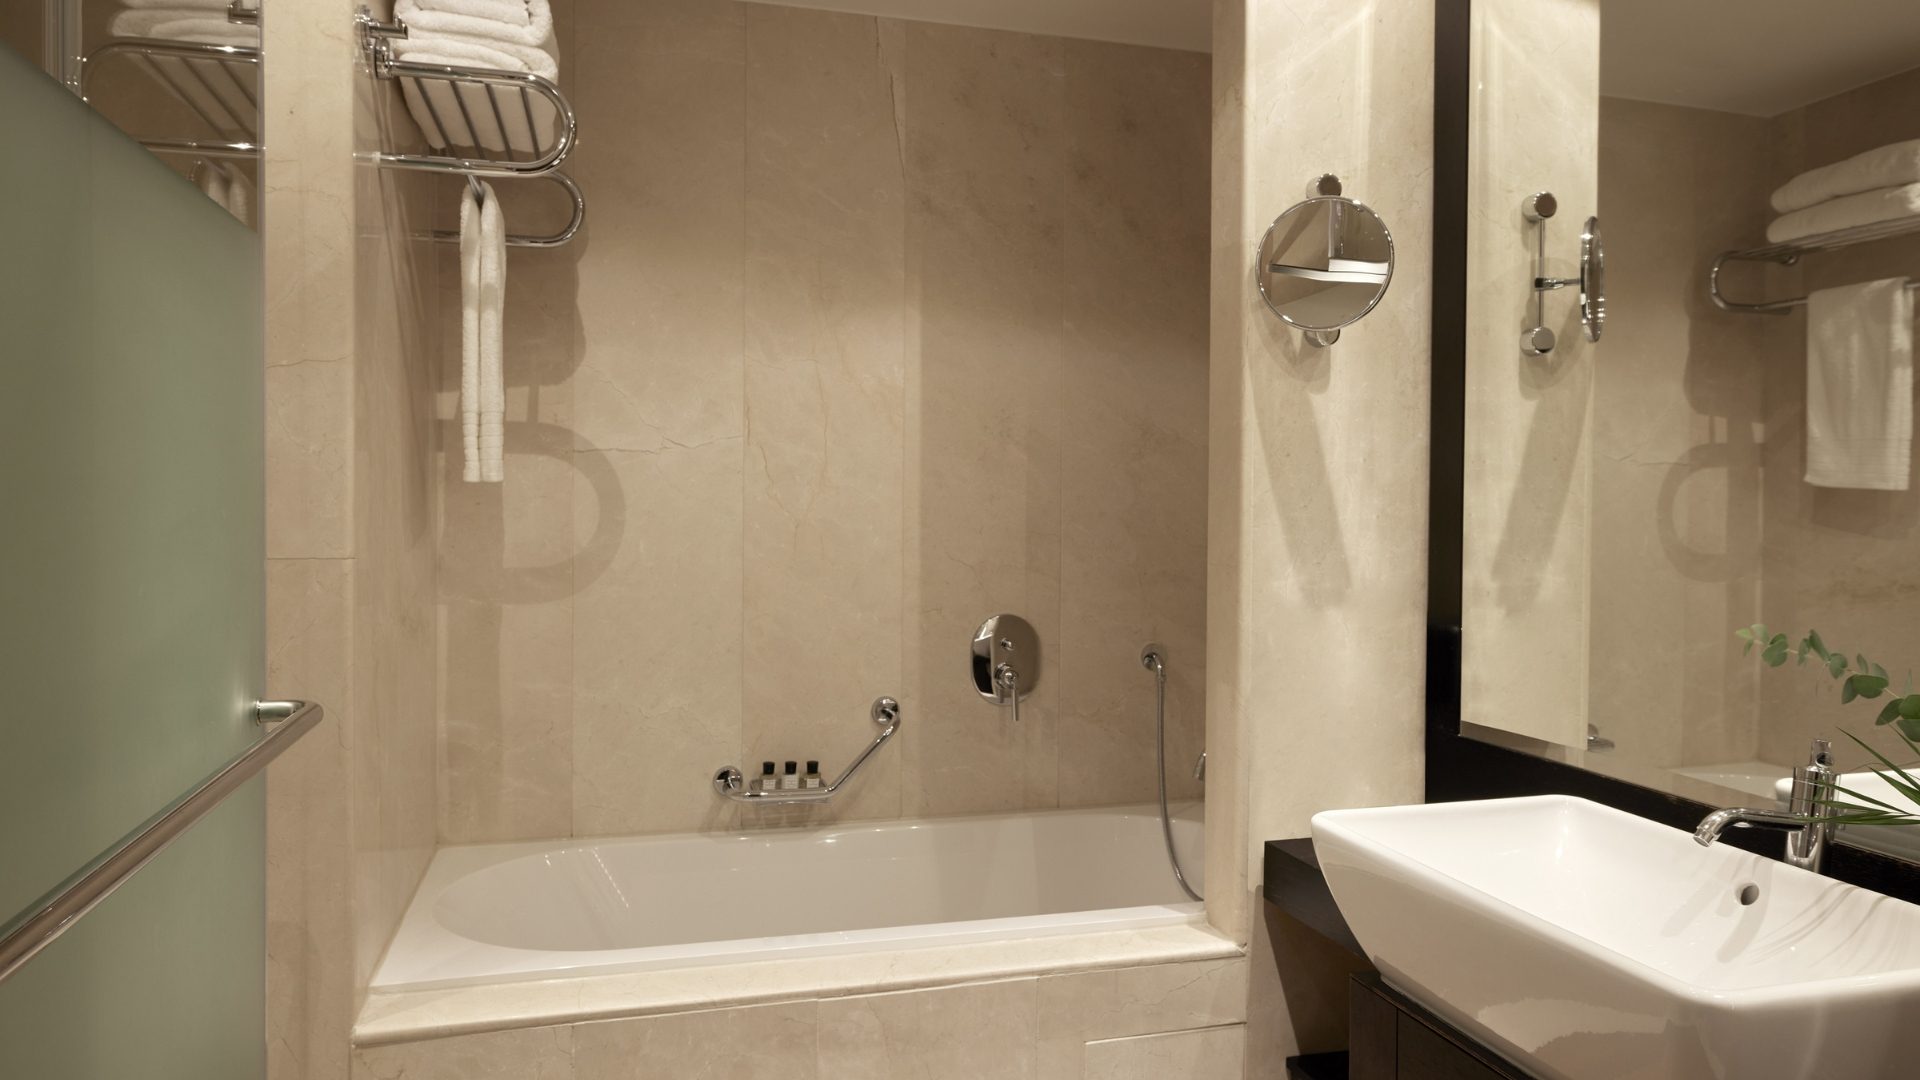 A bathroom with a bathtub at Daios Luxury Living